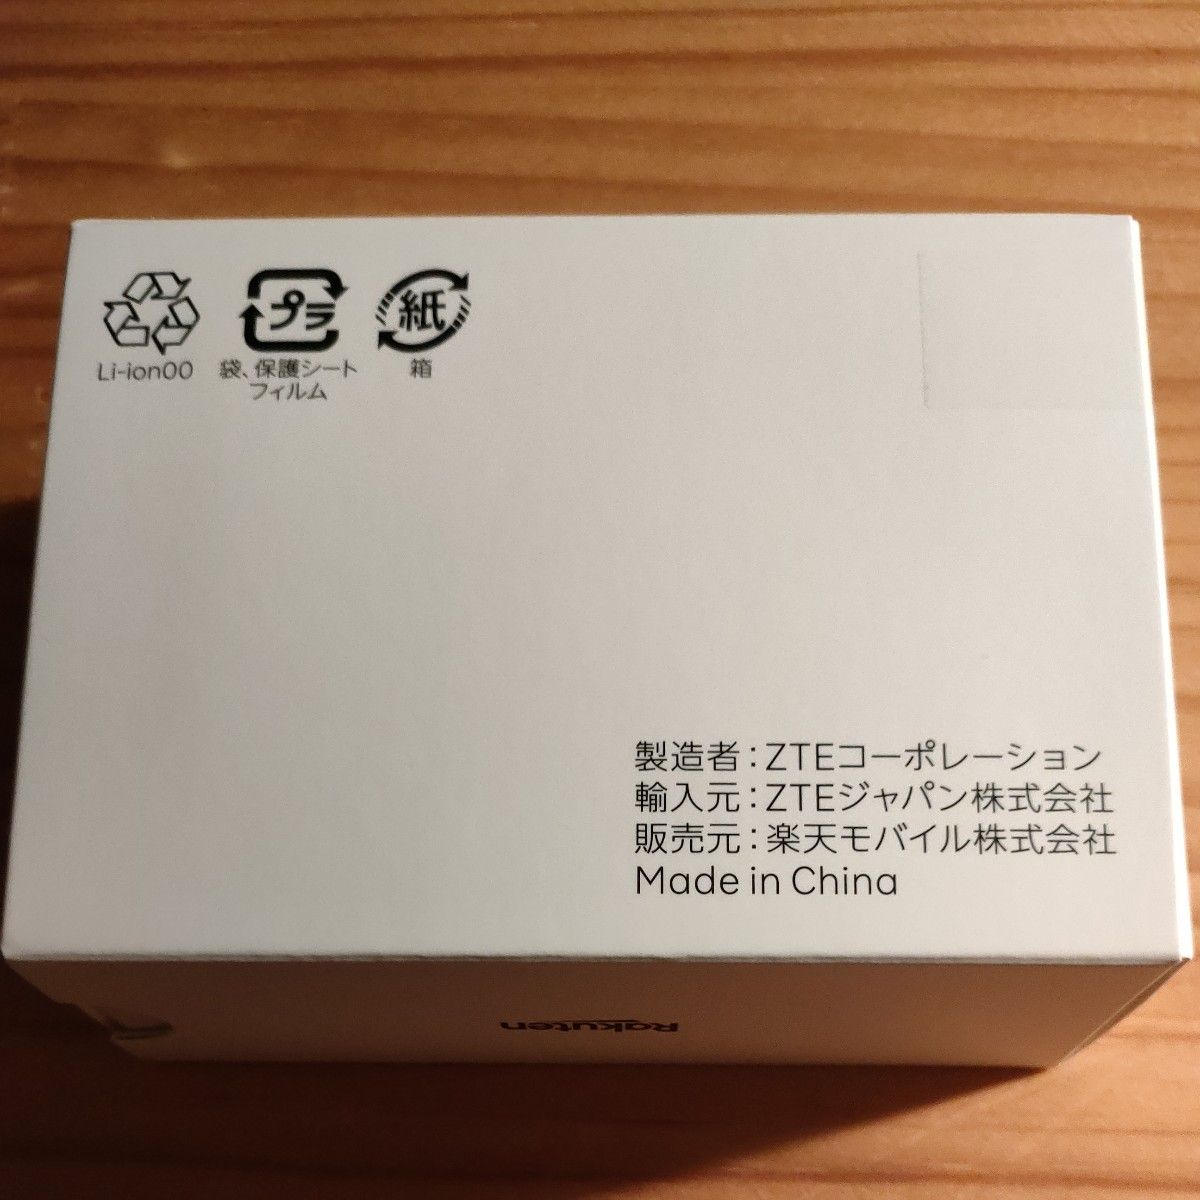 新品未開封 Rakuten WiFi Pocket 2C ZR03M モバイルルーター 楽天 ポケットWi-Fi 白 ホワイト